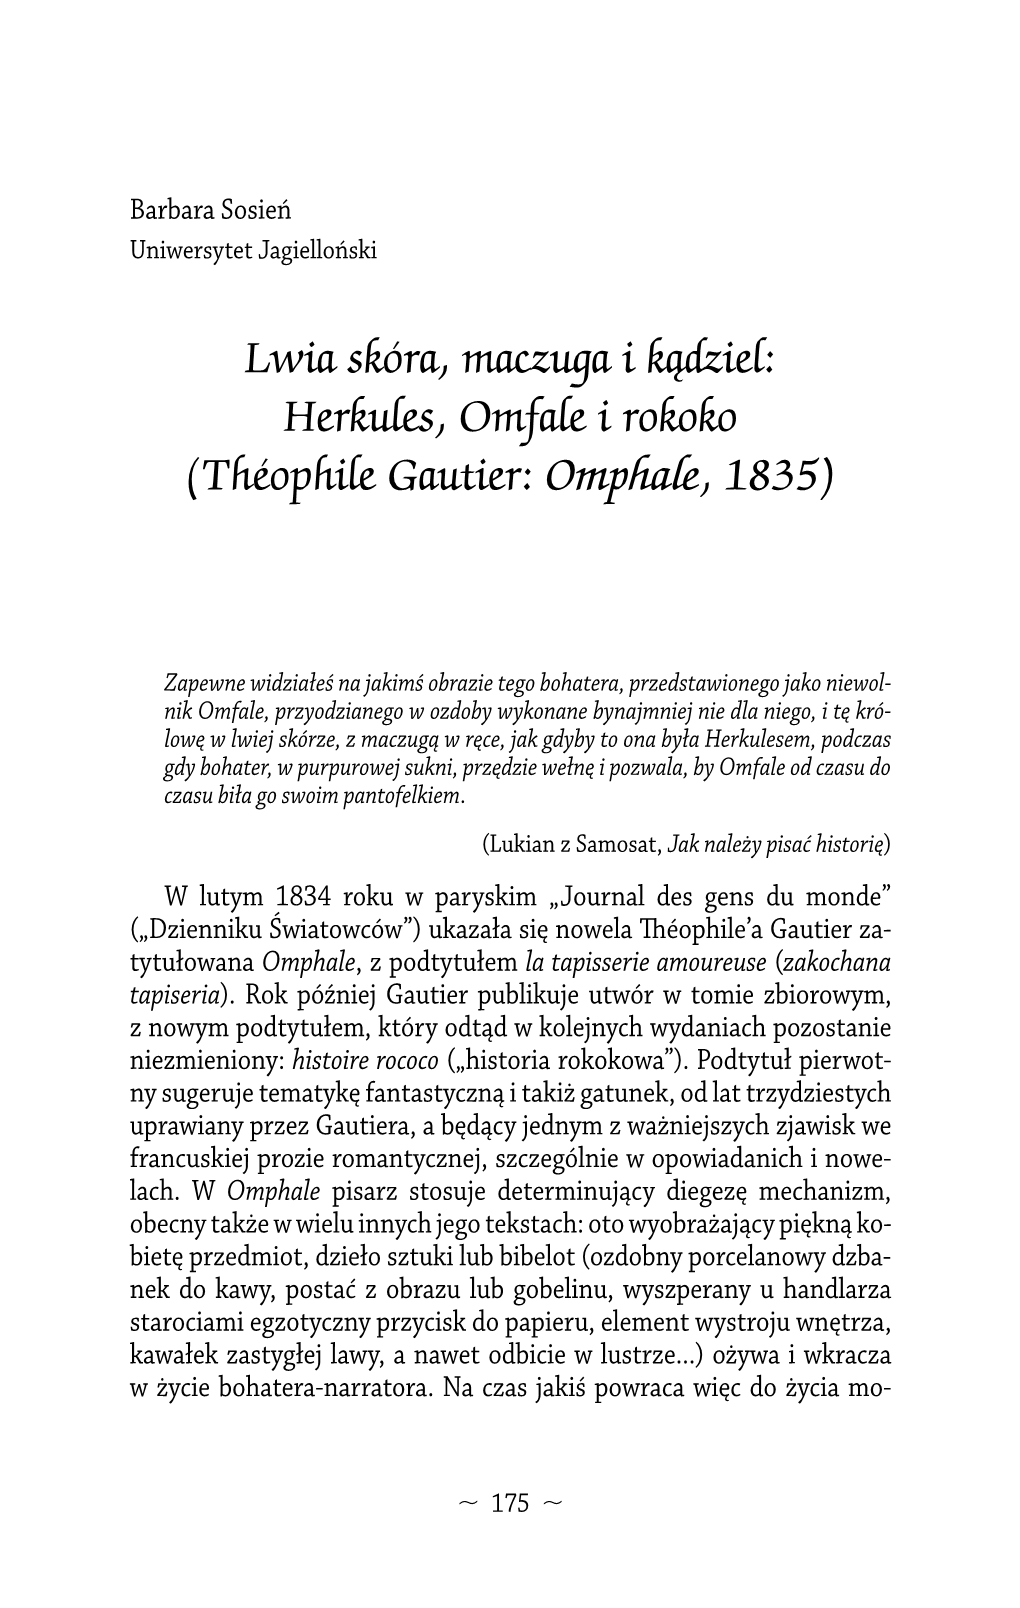 Lwia Skóra, Maczuga I Kądziel: Herkules, Omfale I Rokoko (Théophile Gautier: Omphale, 1835)